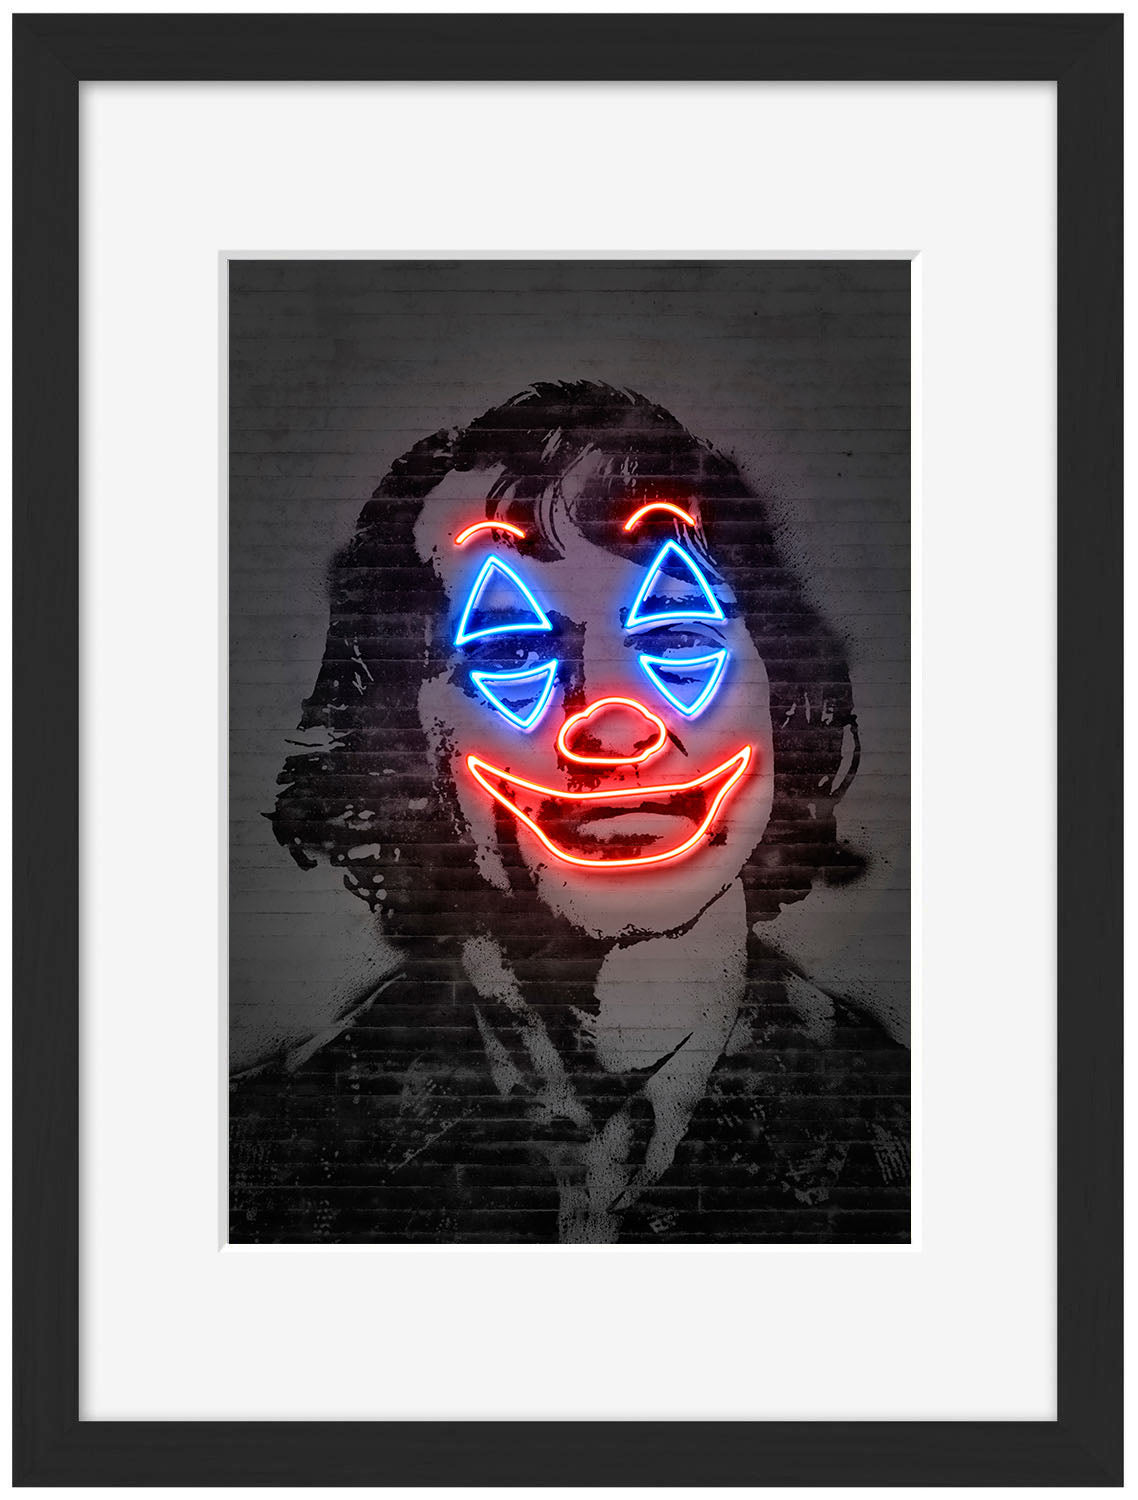 Joker Bufon-neon-art, print-Framed Print-30 x 40 cm-BLUE SHAKER